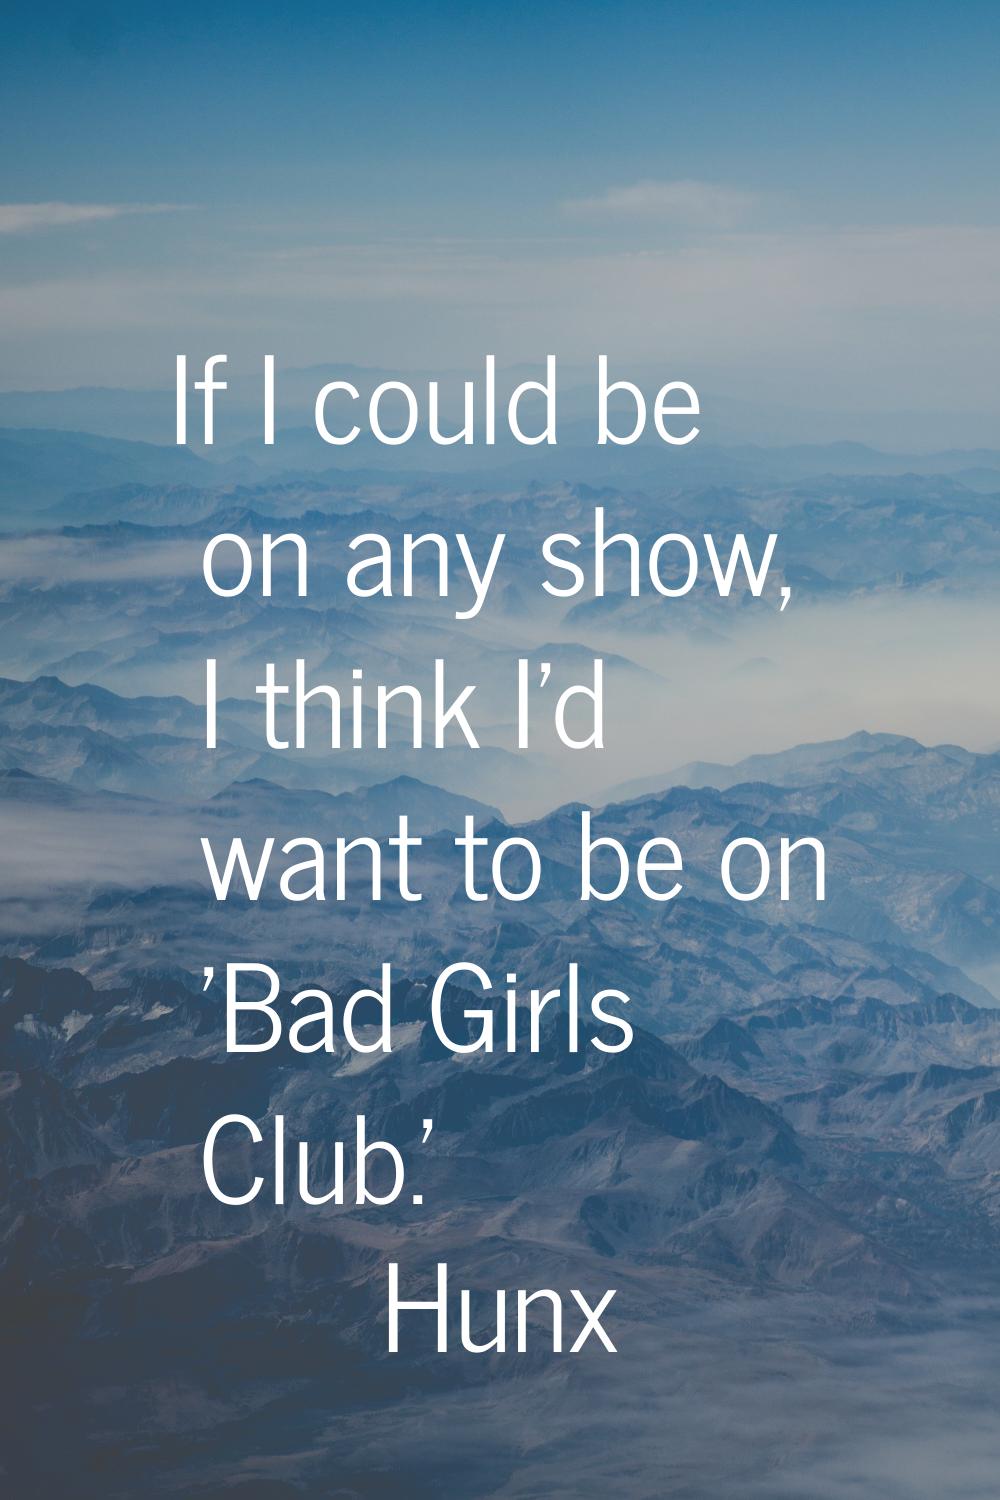 If I could be on any show, I think I'd want to be on 'Bad Girls Club.'